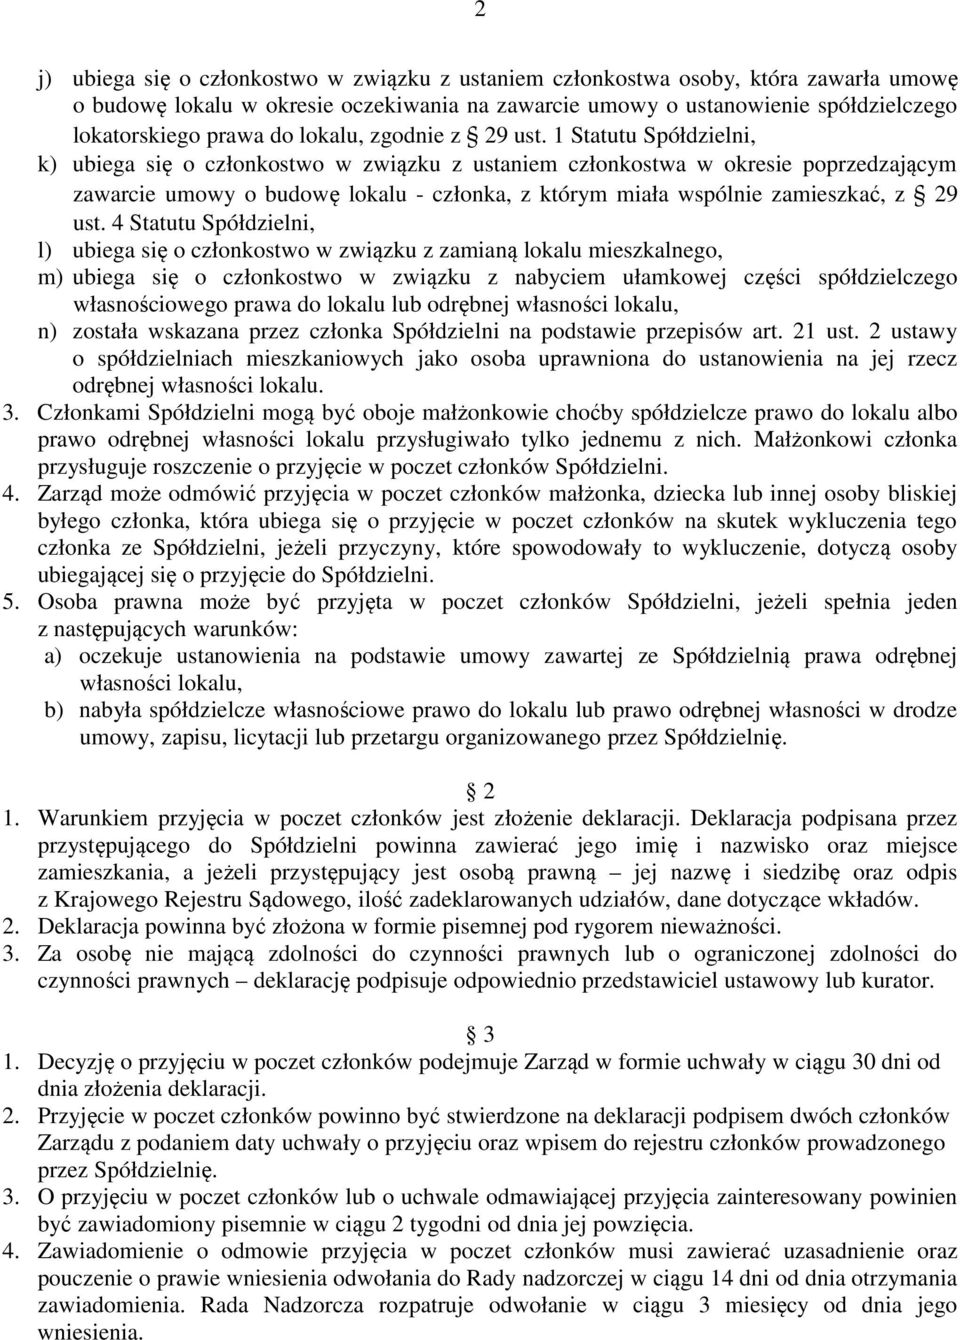 1 Statutu Spółdzielni, k) ubiega się o członkostwo w związku z ustaniem członkostwa w okresie poprzedzającym zawarcie umowy o budowę lokalu - członka, z którym miała wspólnie zamieszkać, z 29 ust.